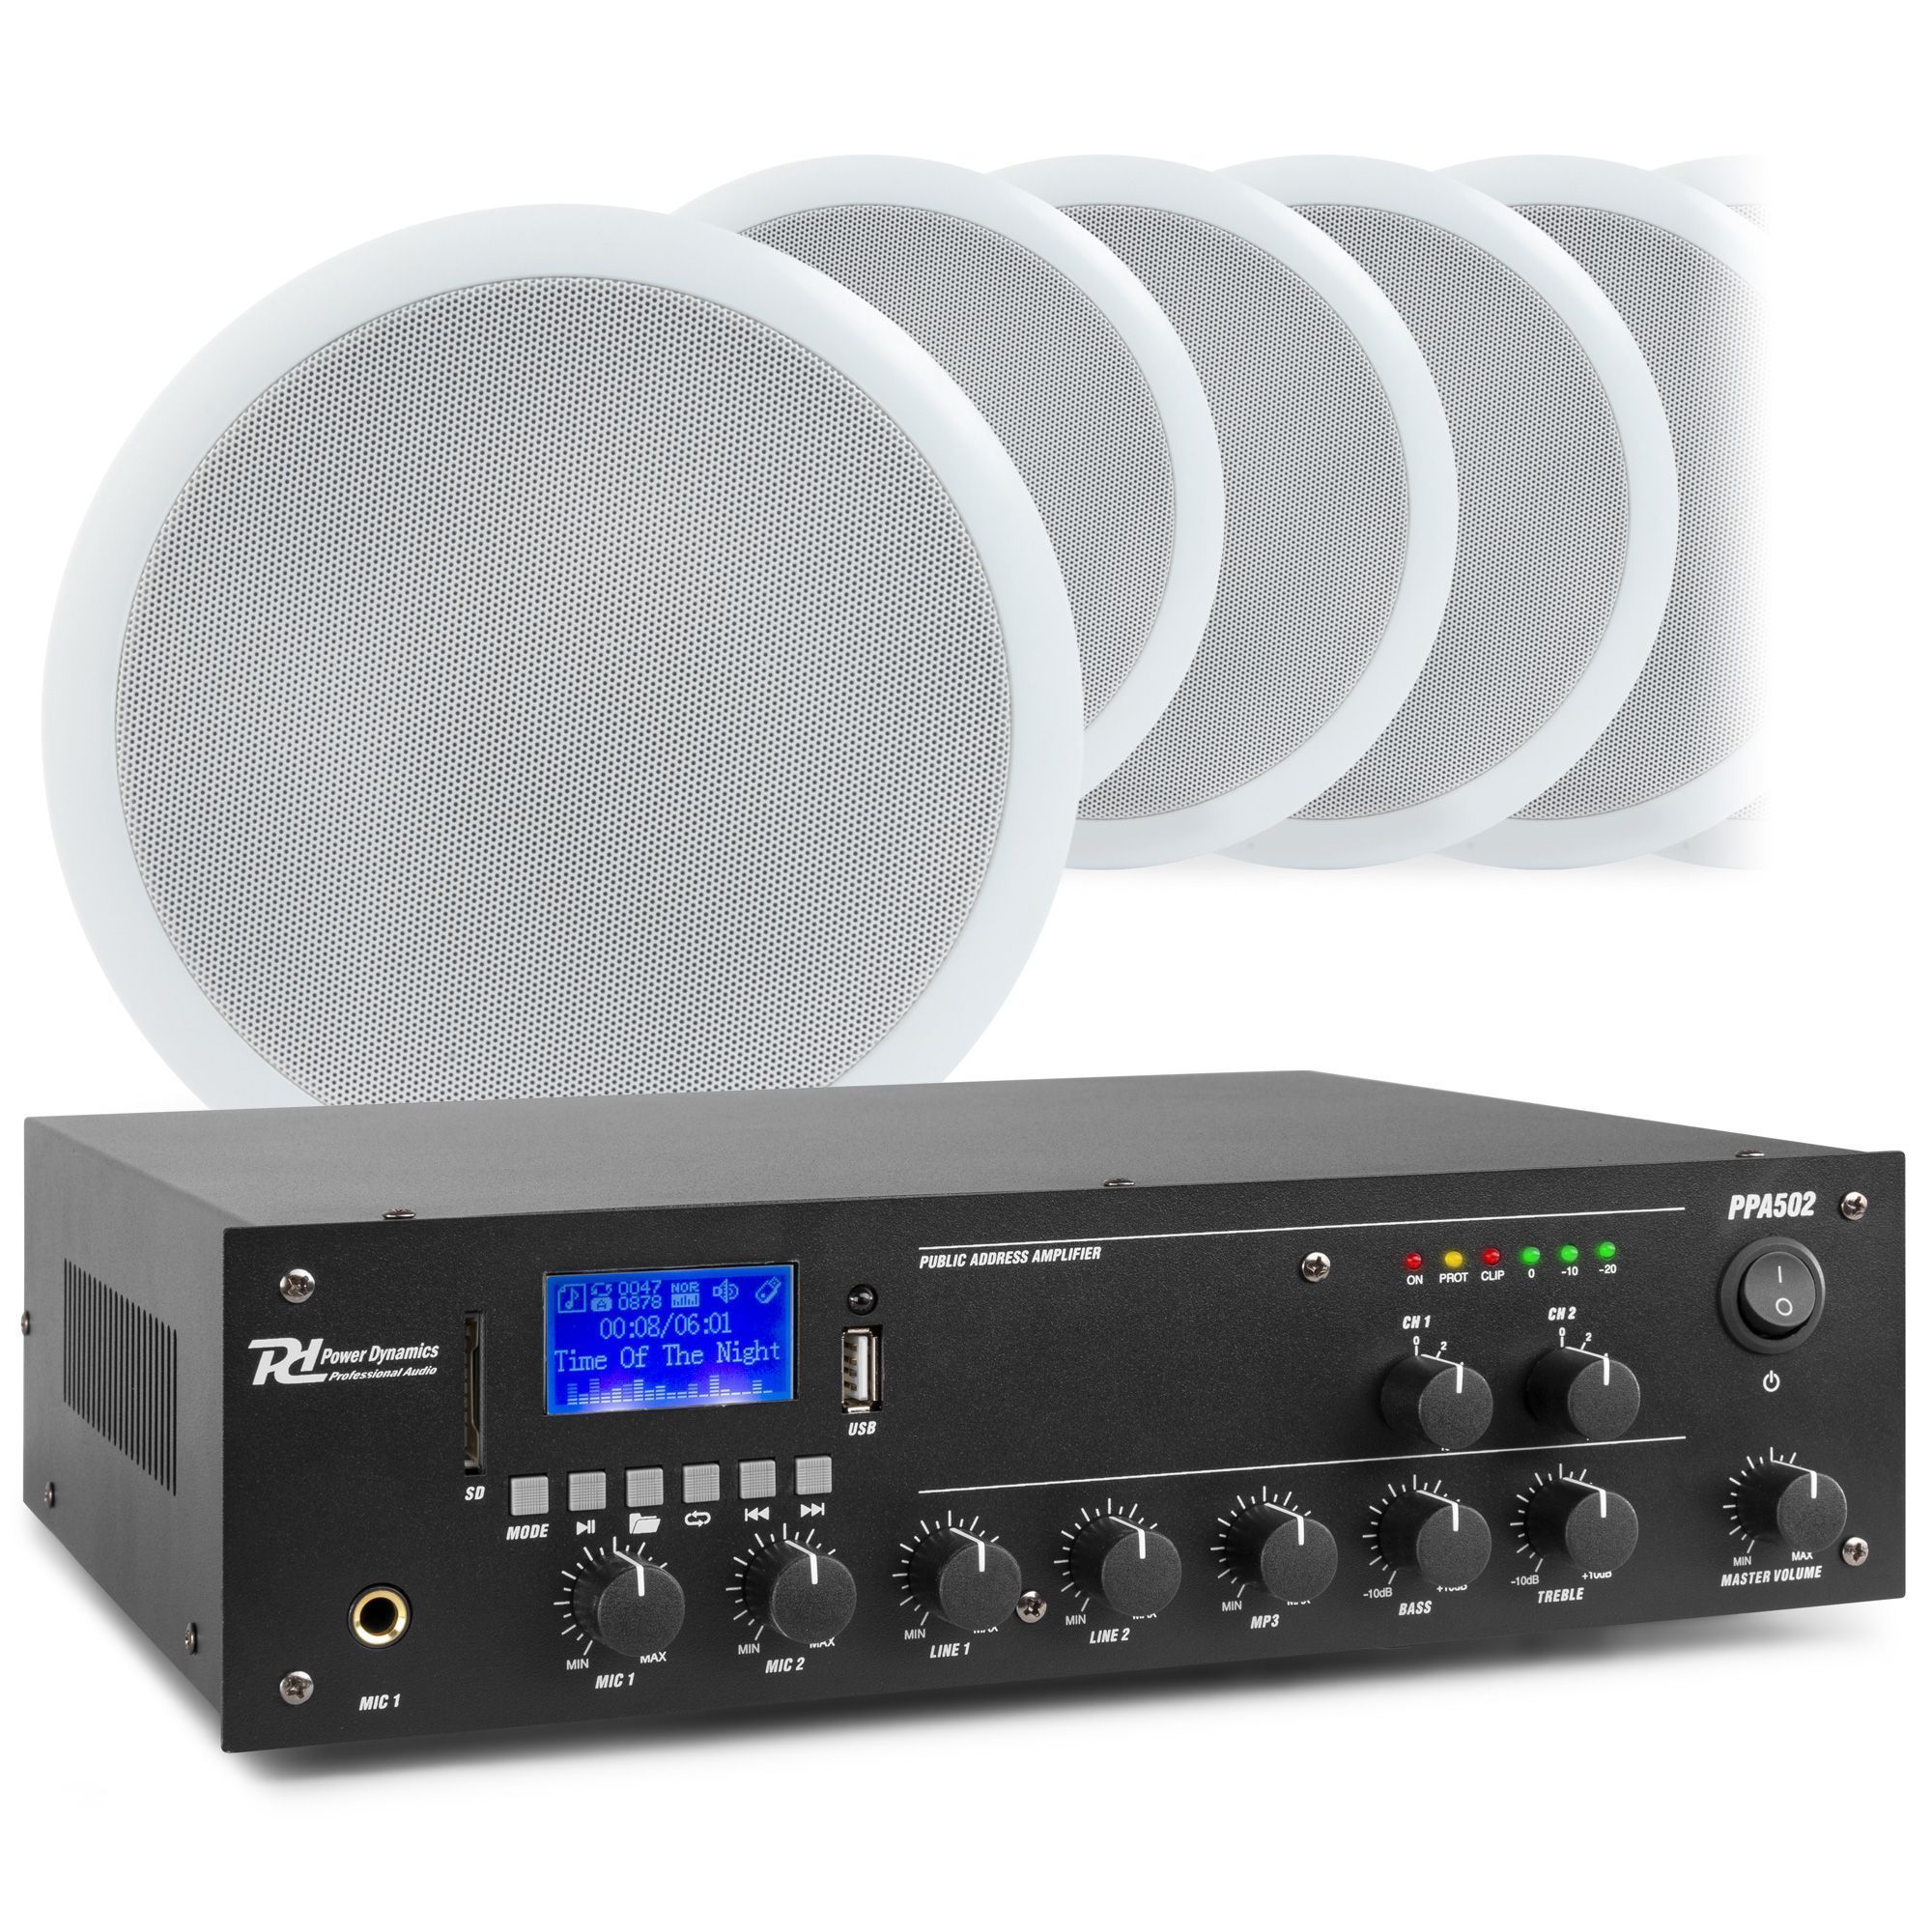 Arthur Danser appel Power Dynamics 2-zone geluidsinstallatie met Bluetooth, PPA502 versterker  en 10 plafondspeakers kopen?